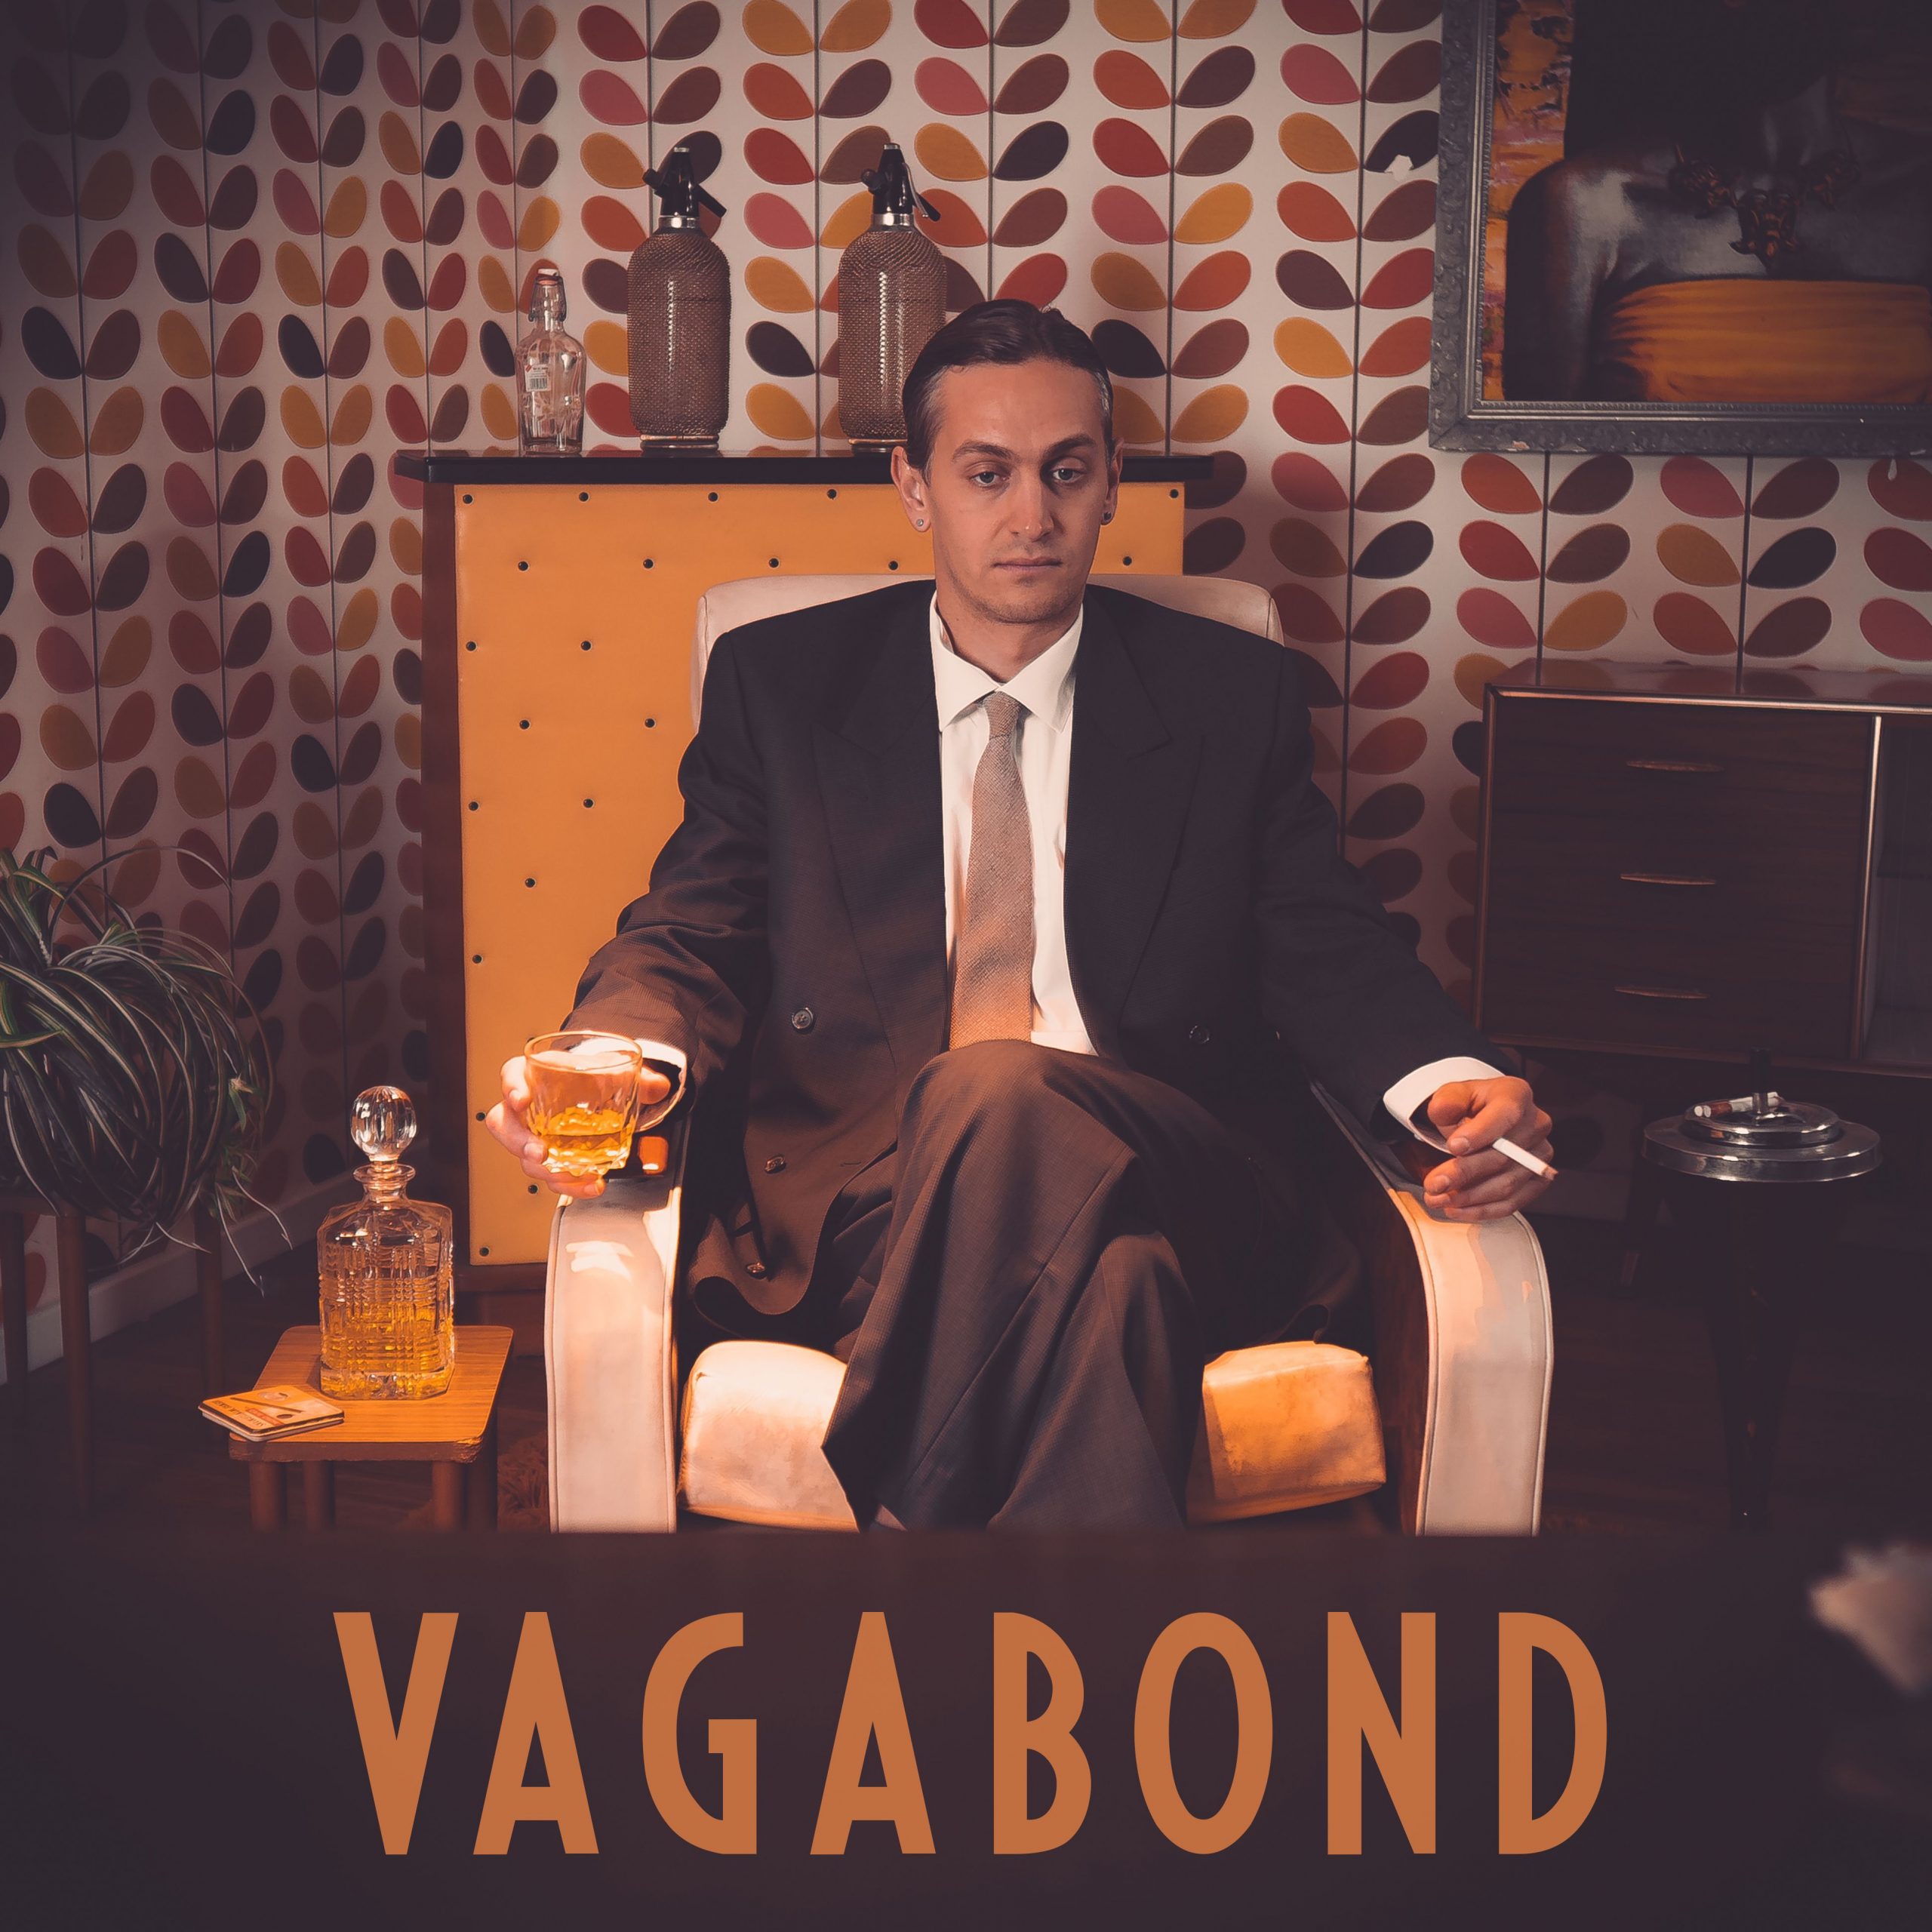 vagabond - sam marks - australia - indie - indie music - indie pop - indie rock - indie folk - new music - music blog - wolf in a suit - wolfinasuit - wolf in a suit blog - wolf in a suit music blog